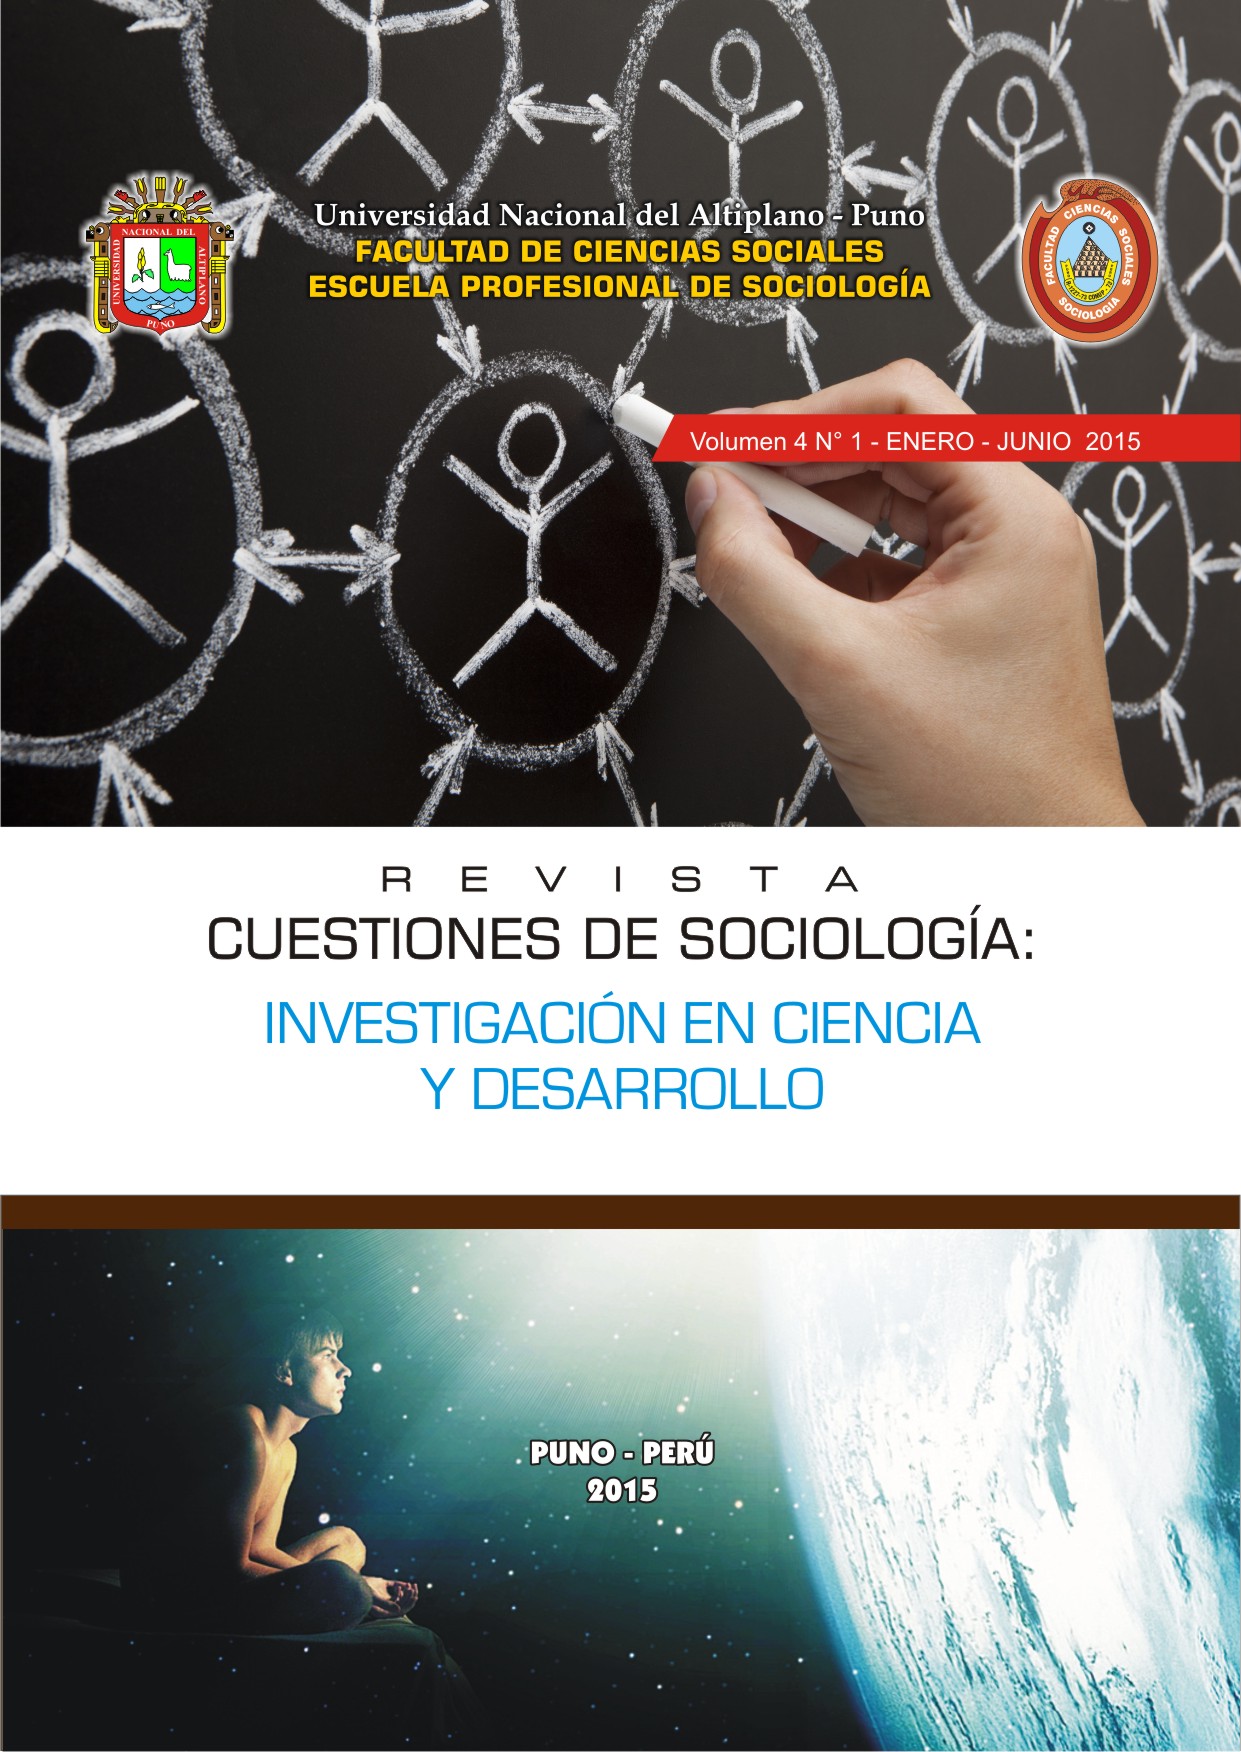 					View Vol. 4 No. 1 (2015): REVISTA CUESTIONES DE SOCIOLOGÍA: INVESTIGACIÓN EN CIENCIA Y DESARROLLO
				